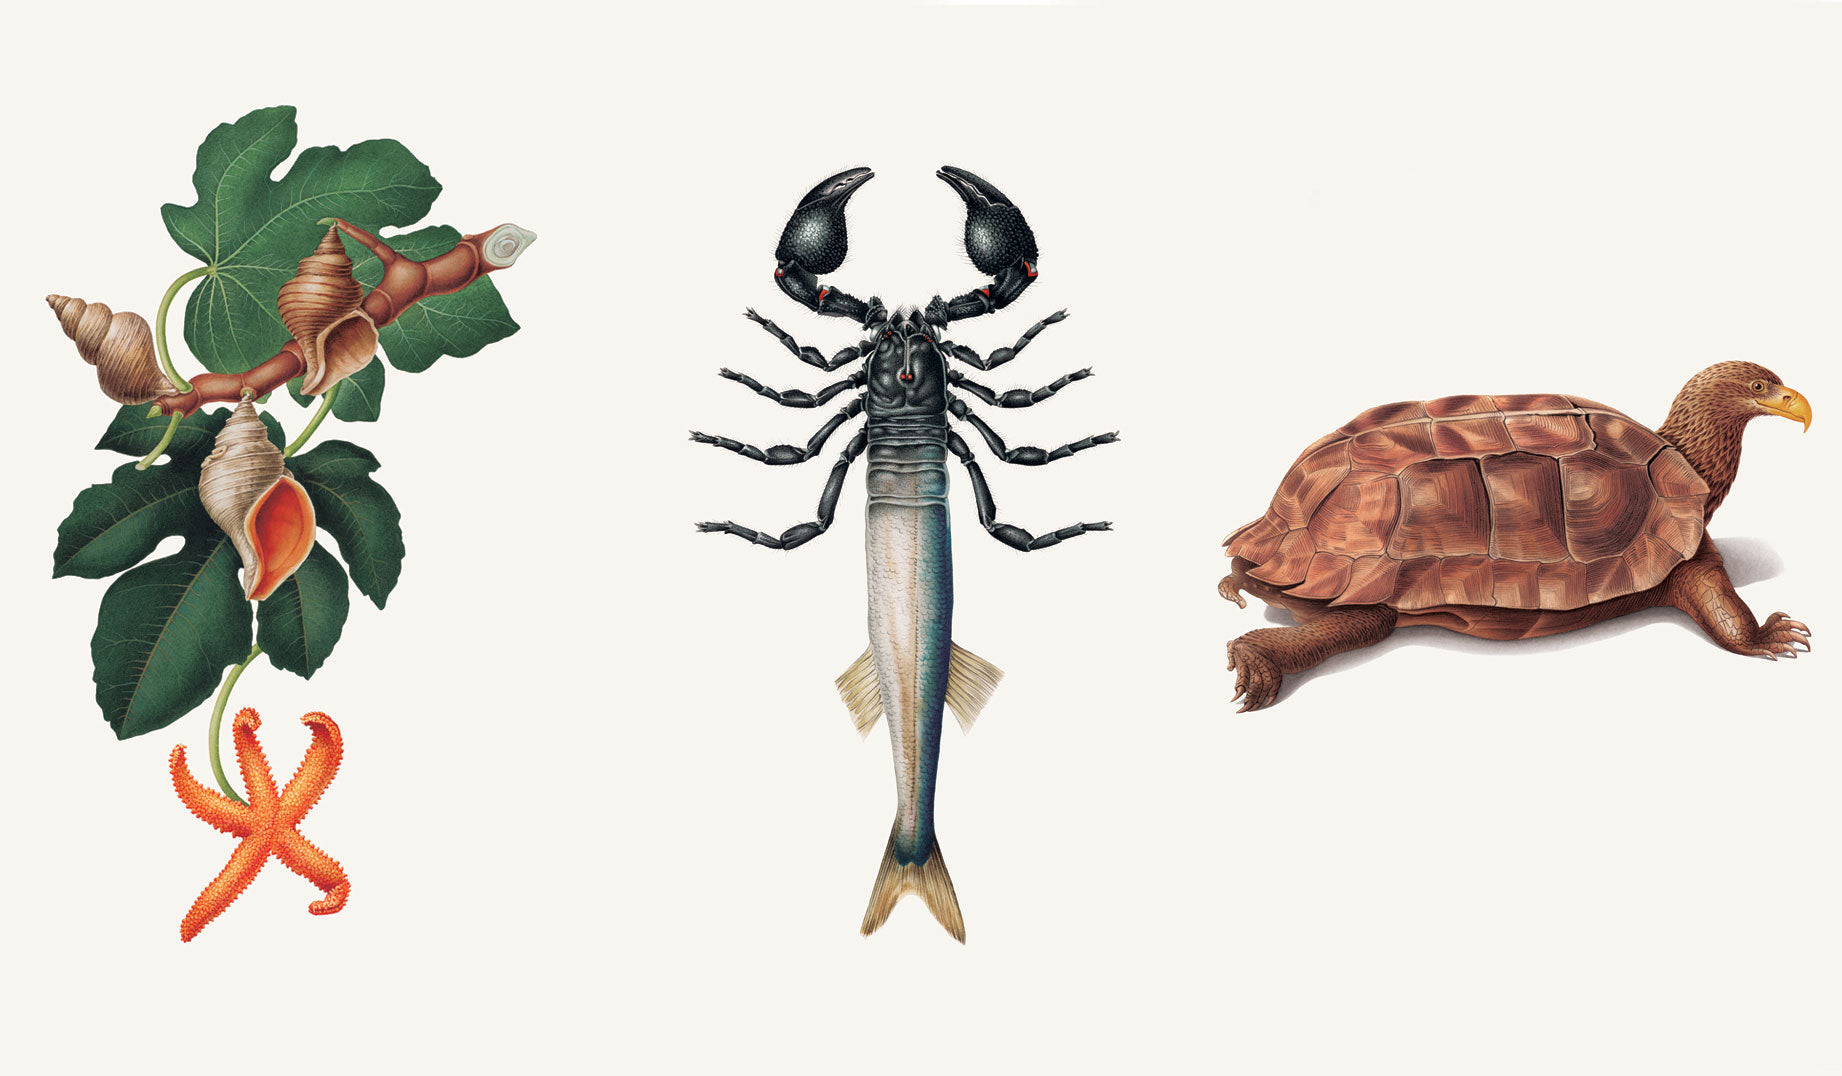 Communicatorum Claritus (starfish), Versatilum Adaptae (fish), and Purposo Careerus (turtle)